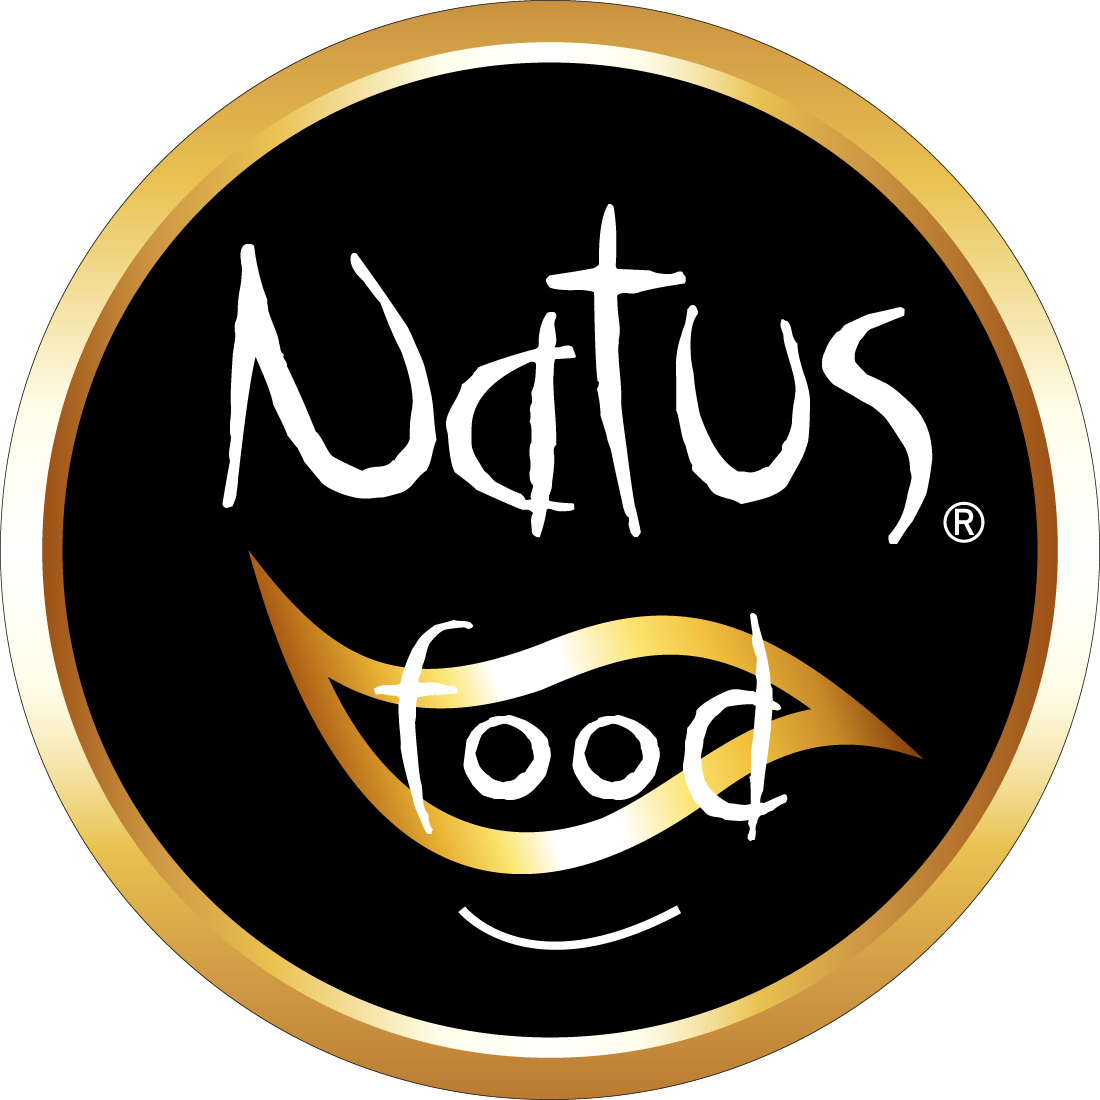 | Natus Food srl